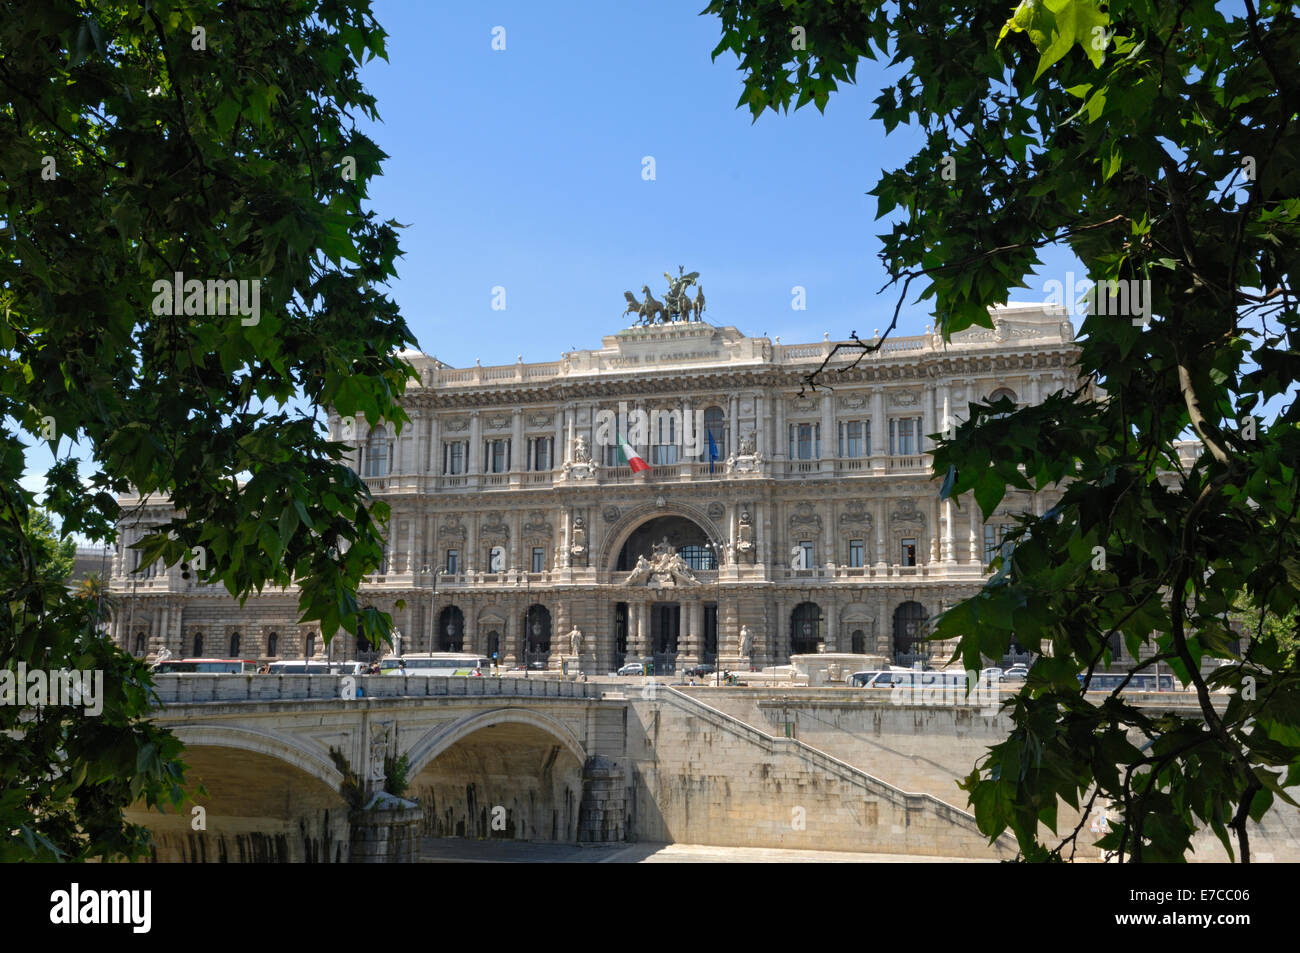 The Palazzo di Giustizia in Prati,Rome Stock Photo